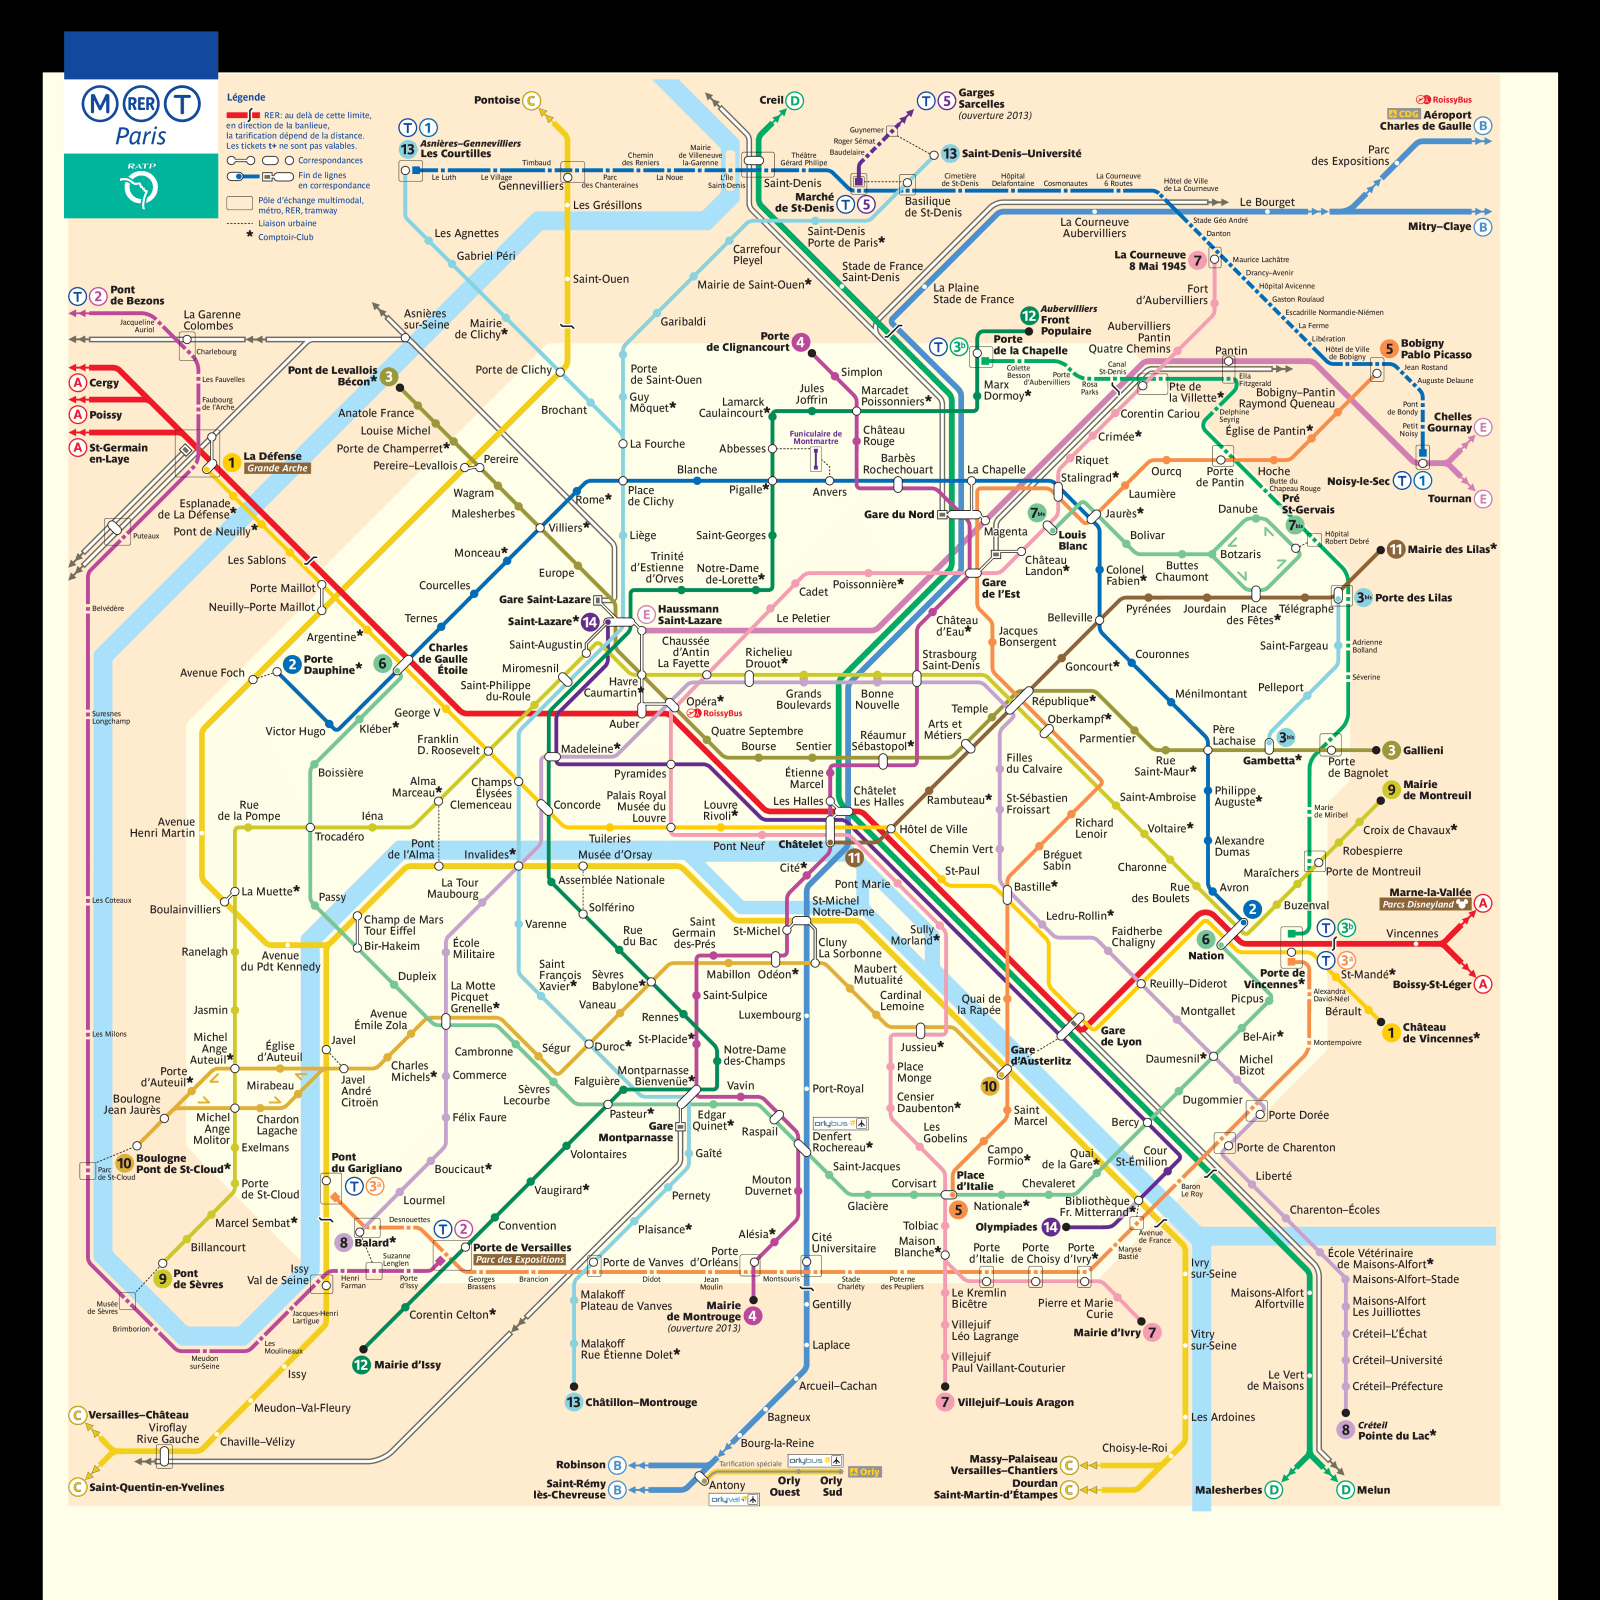 Paris Metro Map and Travel Guide TourbyTransit